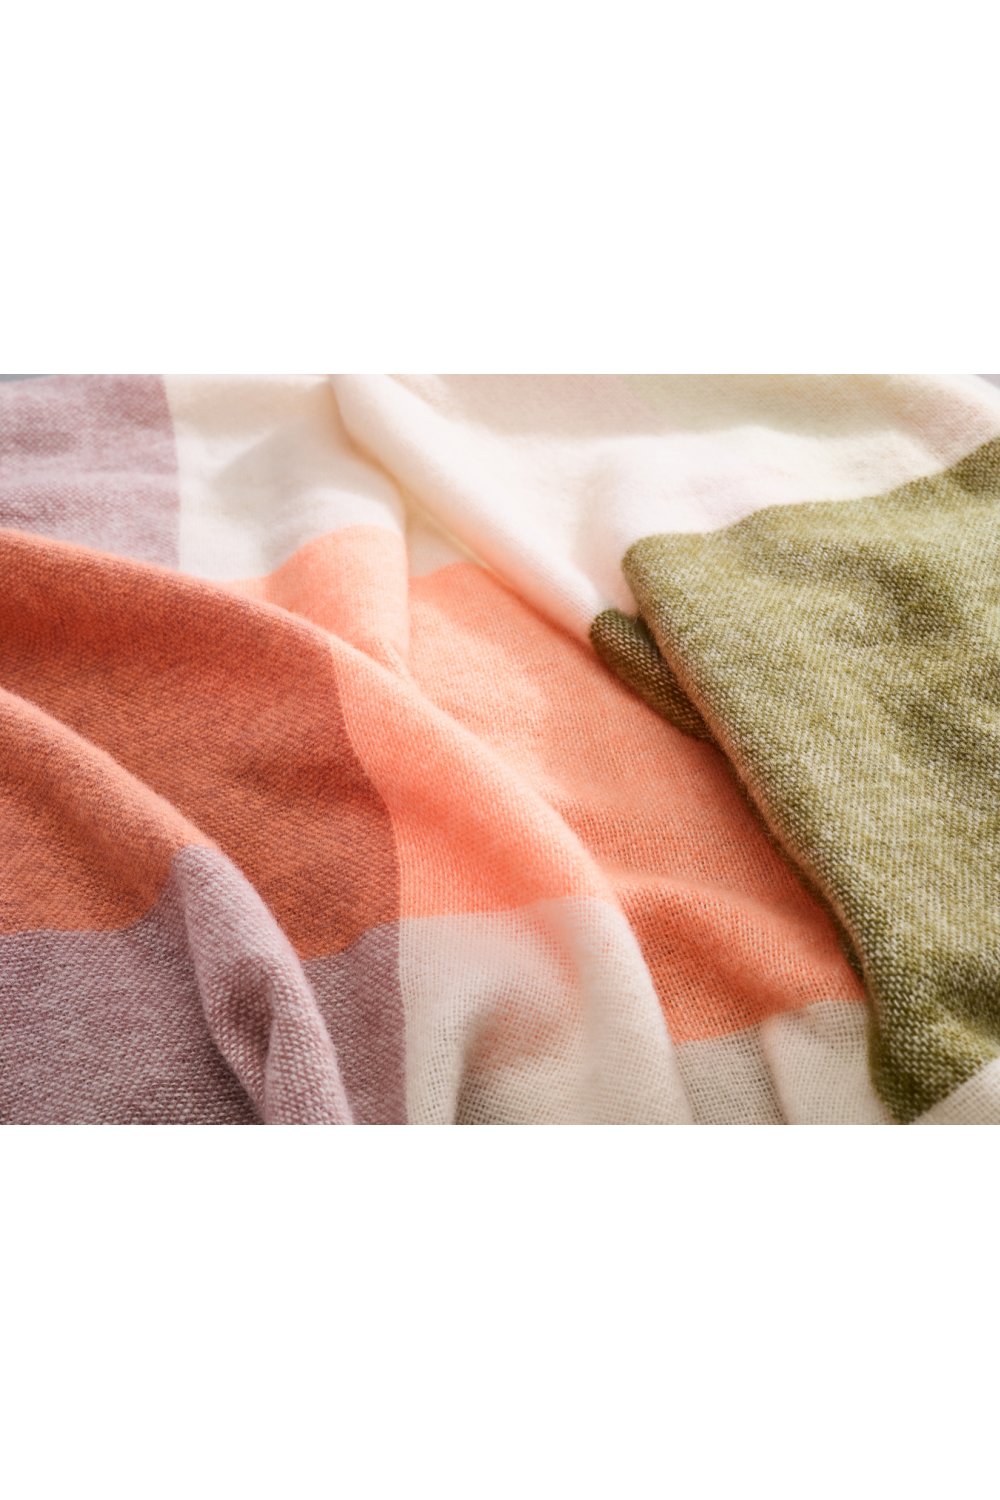 Wool Fringed Blanket | Fatboy Colour Blend | Dutchfurniture.com